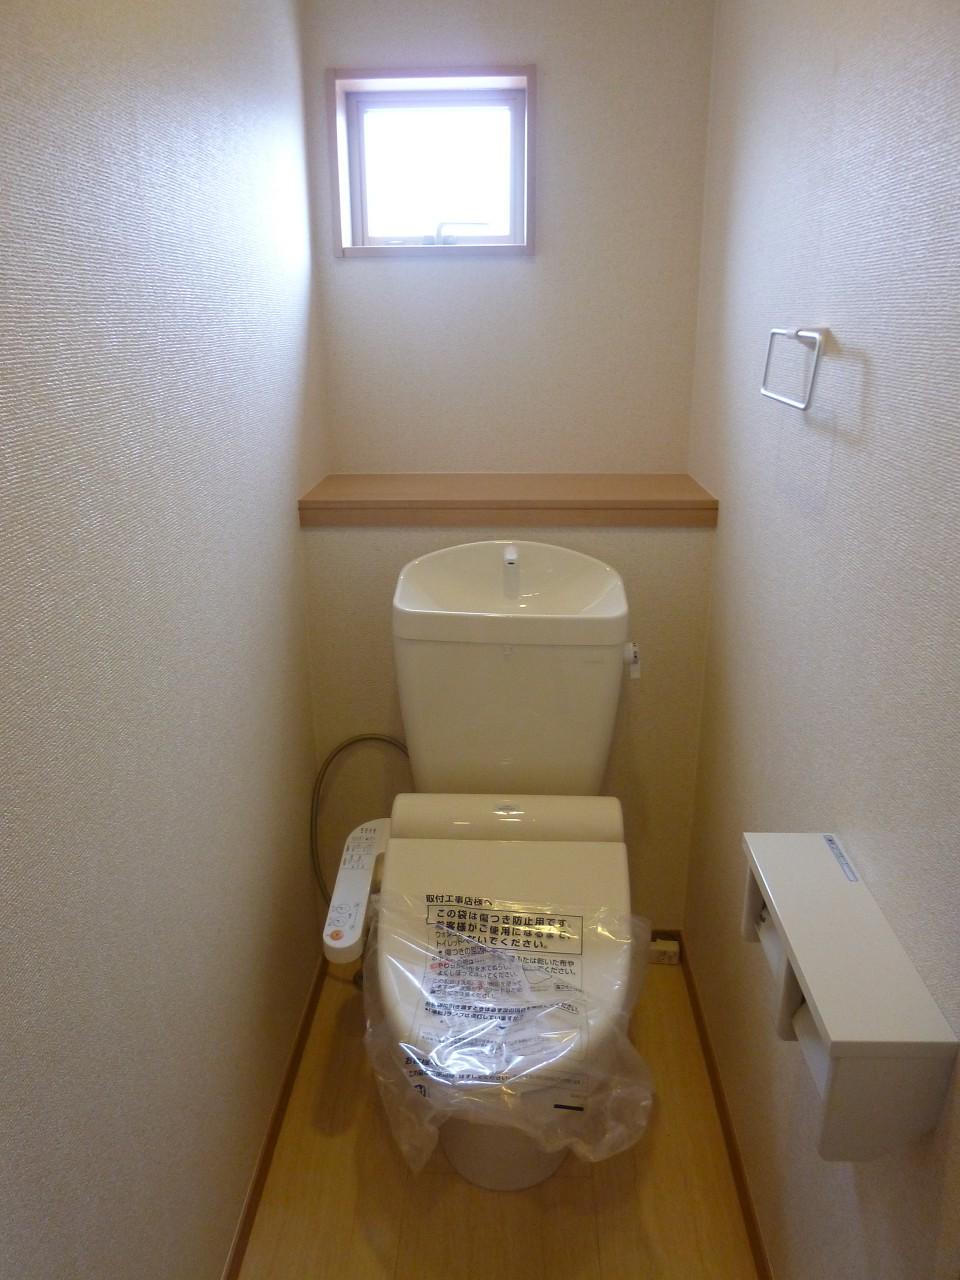 Toilet.  ◆ Washlet toilet ◆ 